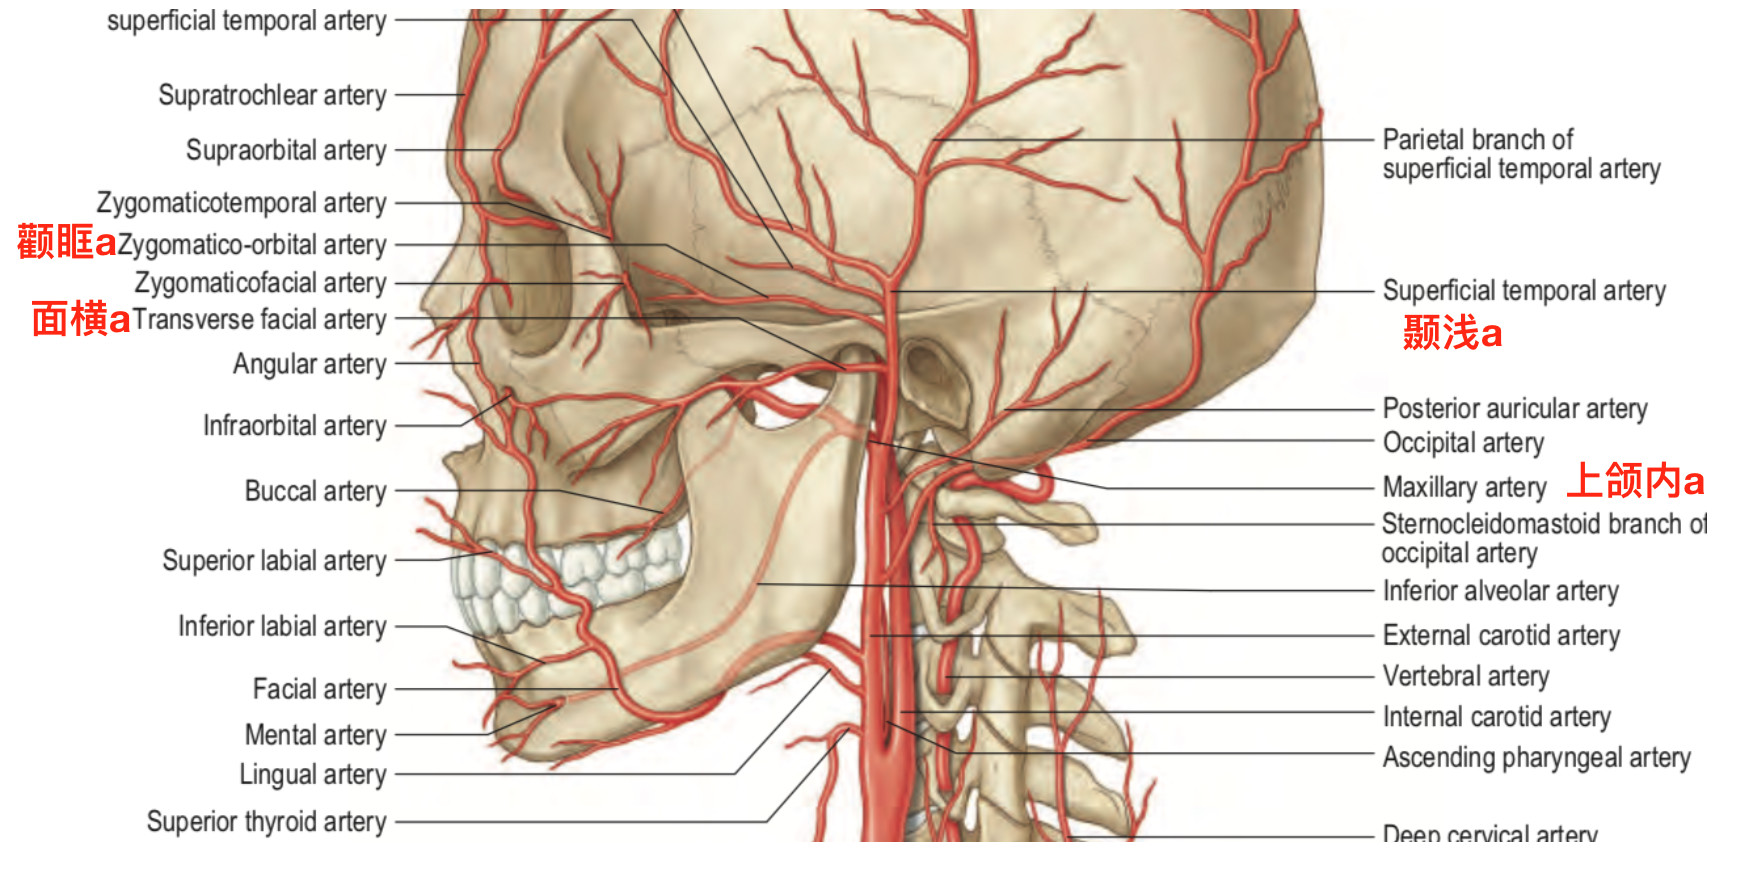 脑血管解剖学习笔记第19期：面动脉颈部走行和分支 - 脑医汇 - 神外资讯 - 神介资讯